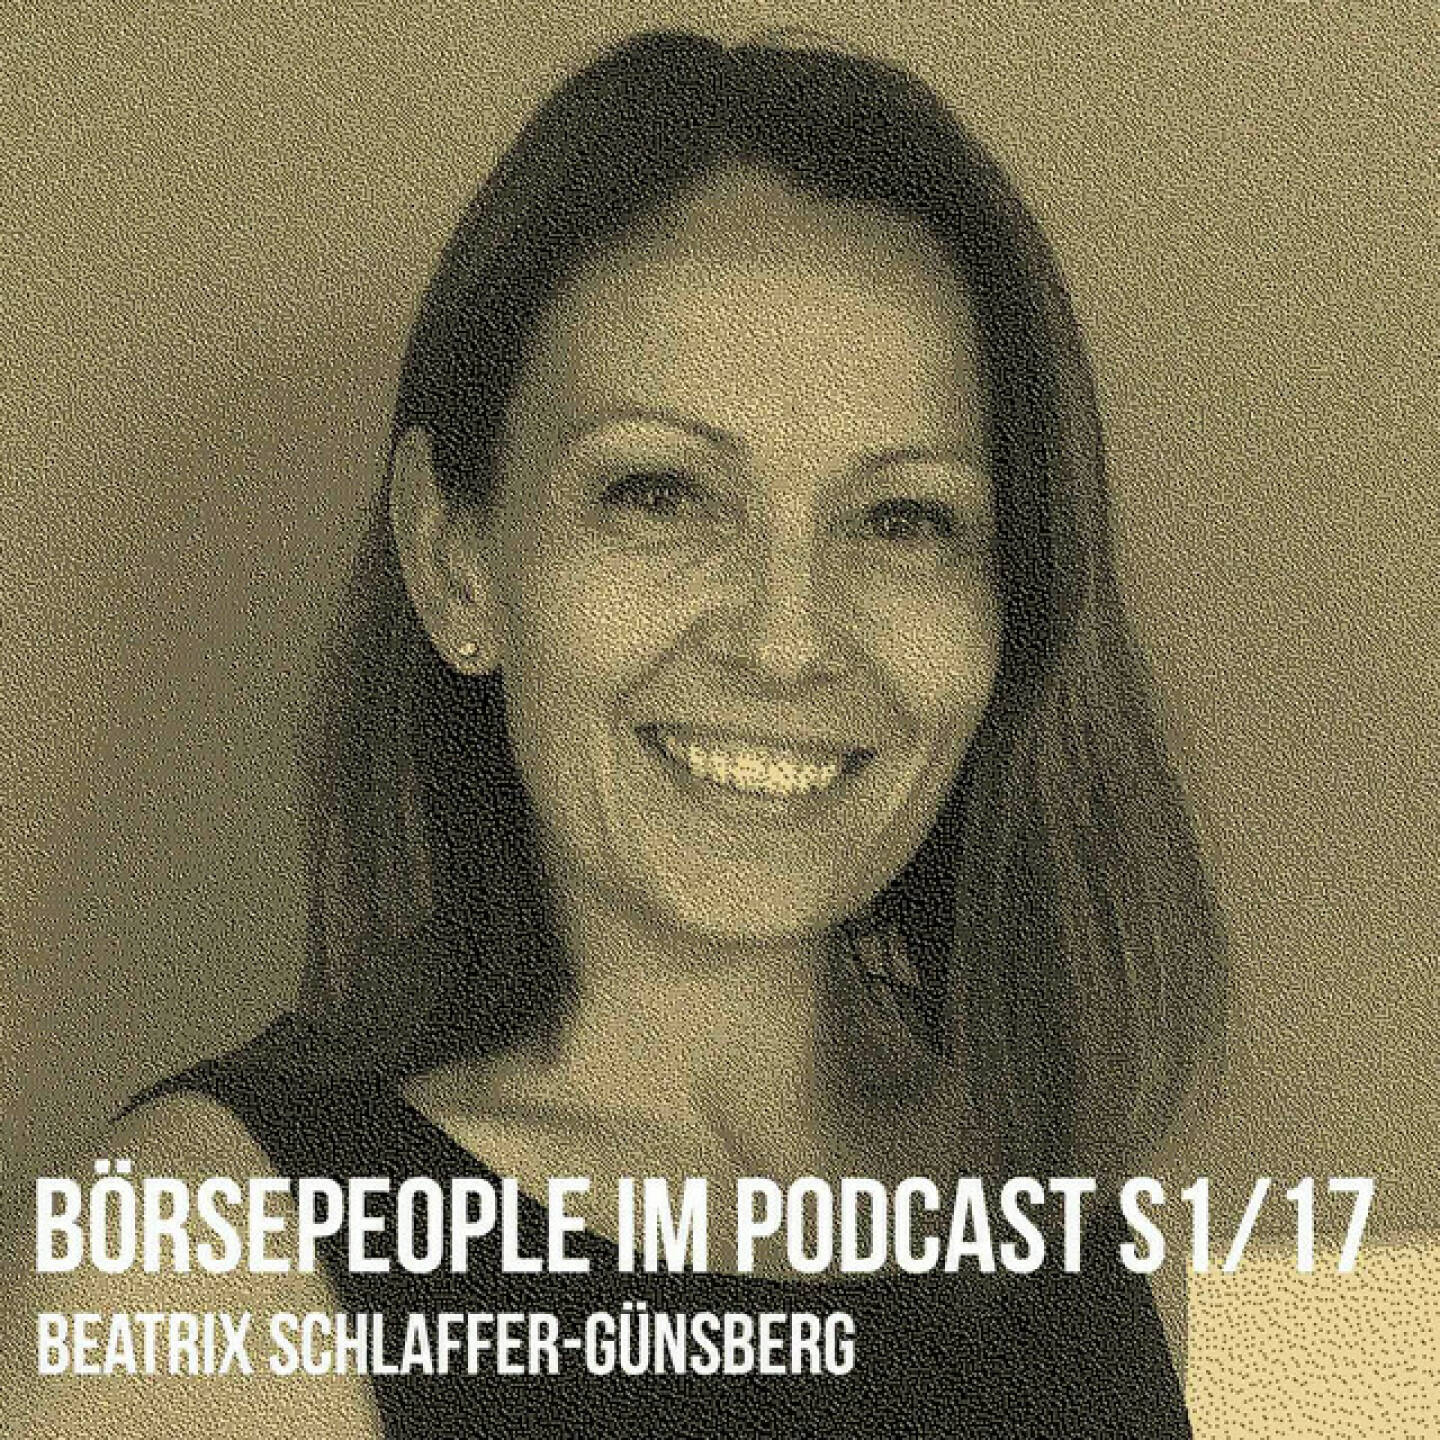 https://open.spotify.com/episode/200b4bBvoimapM0So7PKMX
Börsepeople im Podcast S1/17: Beatrix Schlaffer-Günsberg - <p>Beatrix Schlaffer-Günsberg ist Mitte der 90er bei der Spk. NÖ ins Bankgeschäft eingestiegen, folgte dann dem Ruf nach Wien zu Erste Bank / Ecetra / Brokerjet. Nach einem Intermezzo als IPO Key Account Managerin der Wiener Börse mit Schwerpunkt CEE wäre sie fast IR-Verantwortliche bei einem börsenotierten Unternehmen geworden, entschied sich aber, das Internalisierungsprojekt von Brokerjet in die Erste Group als Marktvorstand zu begleiten. Seit 2017 ist die Universitätslektorin, die früher „geheim“ studiert hat, eine Iniatiatorin von Raumdüften, u.a. wikifolio hat bereits einen eigenen Duft bei Günsberg Creation entwickeln lassen. Wir sprechen im Podcast auch über die Bezugspersonen Peter Bosek und Manfred Bartalszky sowie darüber, dass eigentlich jedes Unternehmen einen eigenen Signature Duft bräuchte und es so etwas auch für Aktionäre geben sollte.</p><br/><p>http://www.guensberg.at <br/><a href=mailto:beatrix&#64;guensberg.at rel=nofollow>beatrix&#64;guensberg.at</a></p><br/><p>About: Die Serie Börsepeople findet m Rahmen von http://www.christian-drastil.com/podcast statt. Es handelt sich dabei um typische Personality- und Werdegang -Gespräche. Die Season 1 umfasst unter dem Motto „22 Börsepeople in Summer 22“ eben 22 Po dcast-Talks, divers zusammengesetzt. Presenter ist die Management Factory (<a href=https://www.mf.ag rel=nofollow>https://www.mf.ag</a> ). </p><br/><p>Bewertungen bei Apple (oder auch Spotify) machen mir Freude: <a href=https://podcasts.apple.com/at/podcast/christian-drastil-wiener-börse-sport-musik-und-mehr-my-life/id1484919130 rel=nofollow>https://podcasts.apple.com/at/podcast/christian-drastil-wiener-börse-sport-musik-und-mehr-my-life/id1484919130</a> .</p>